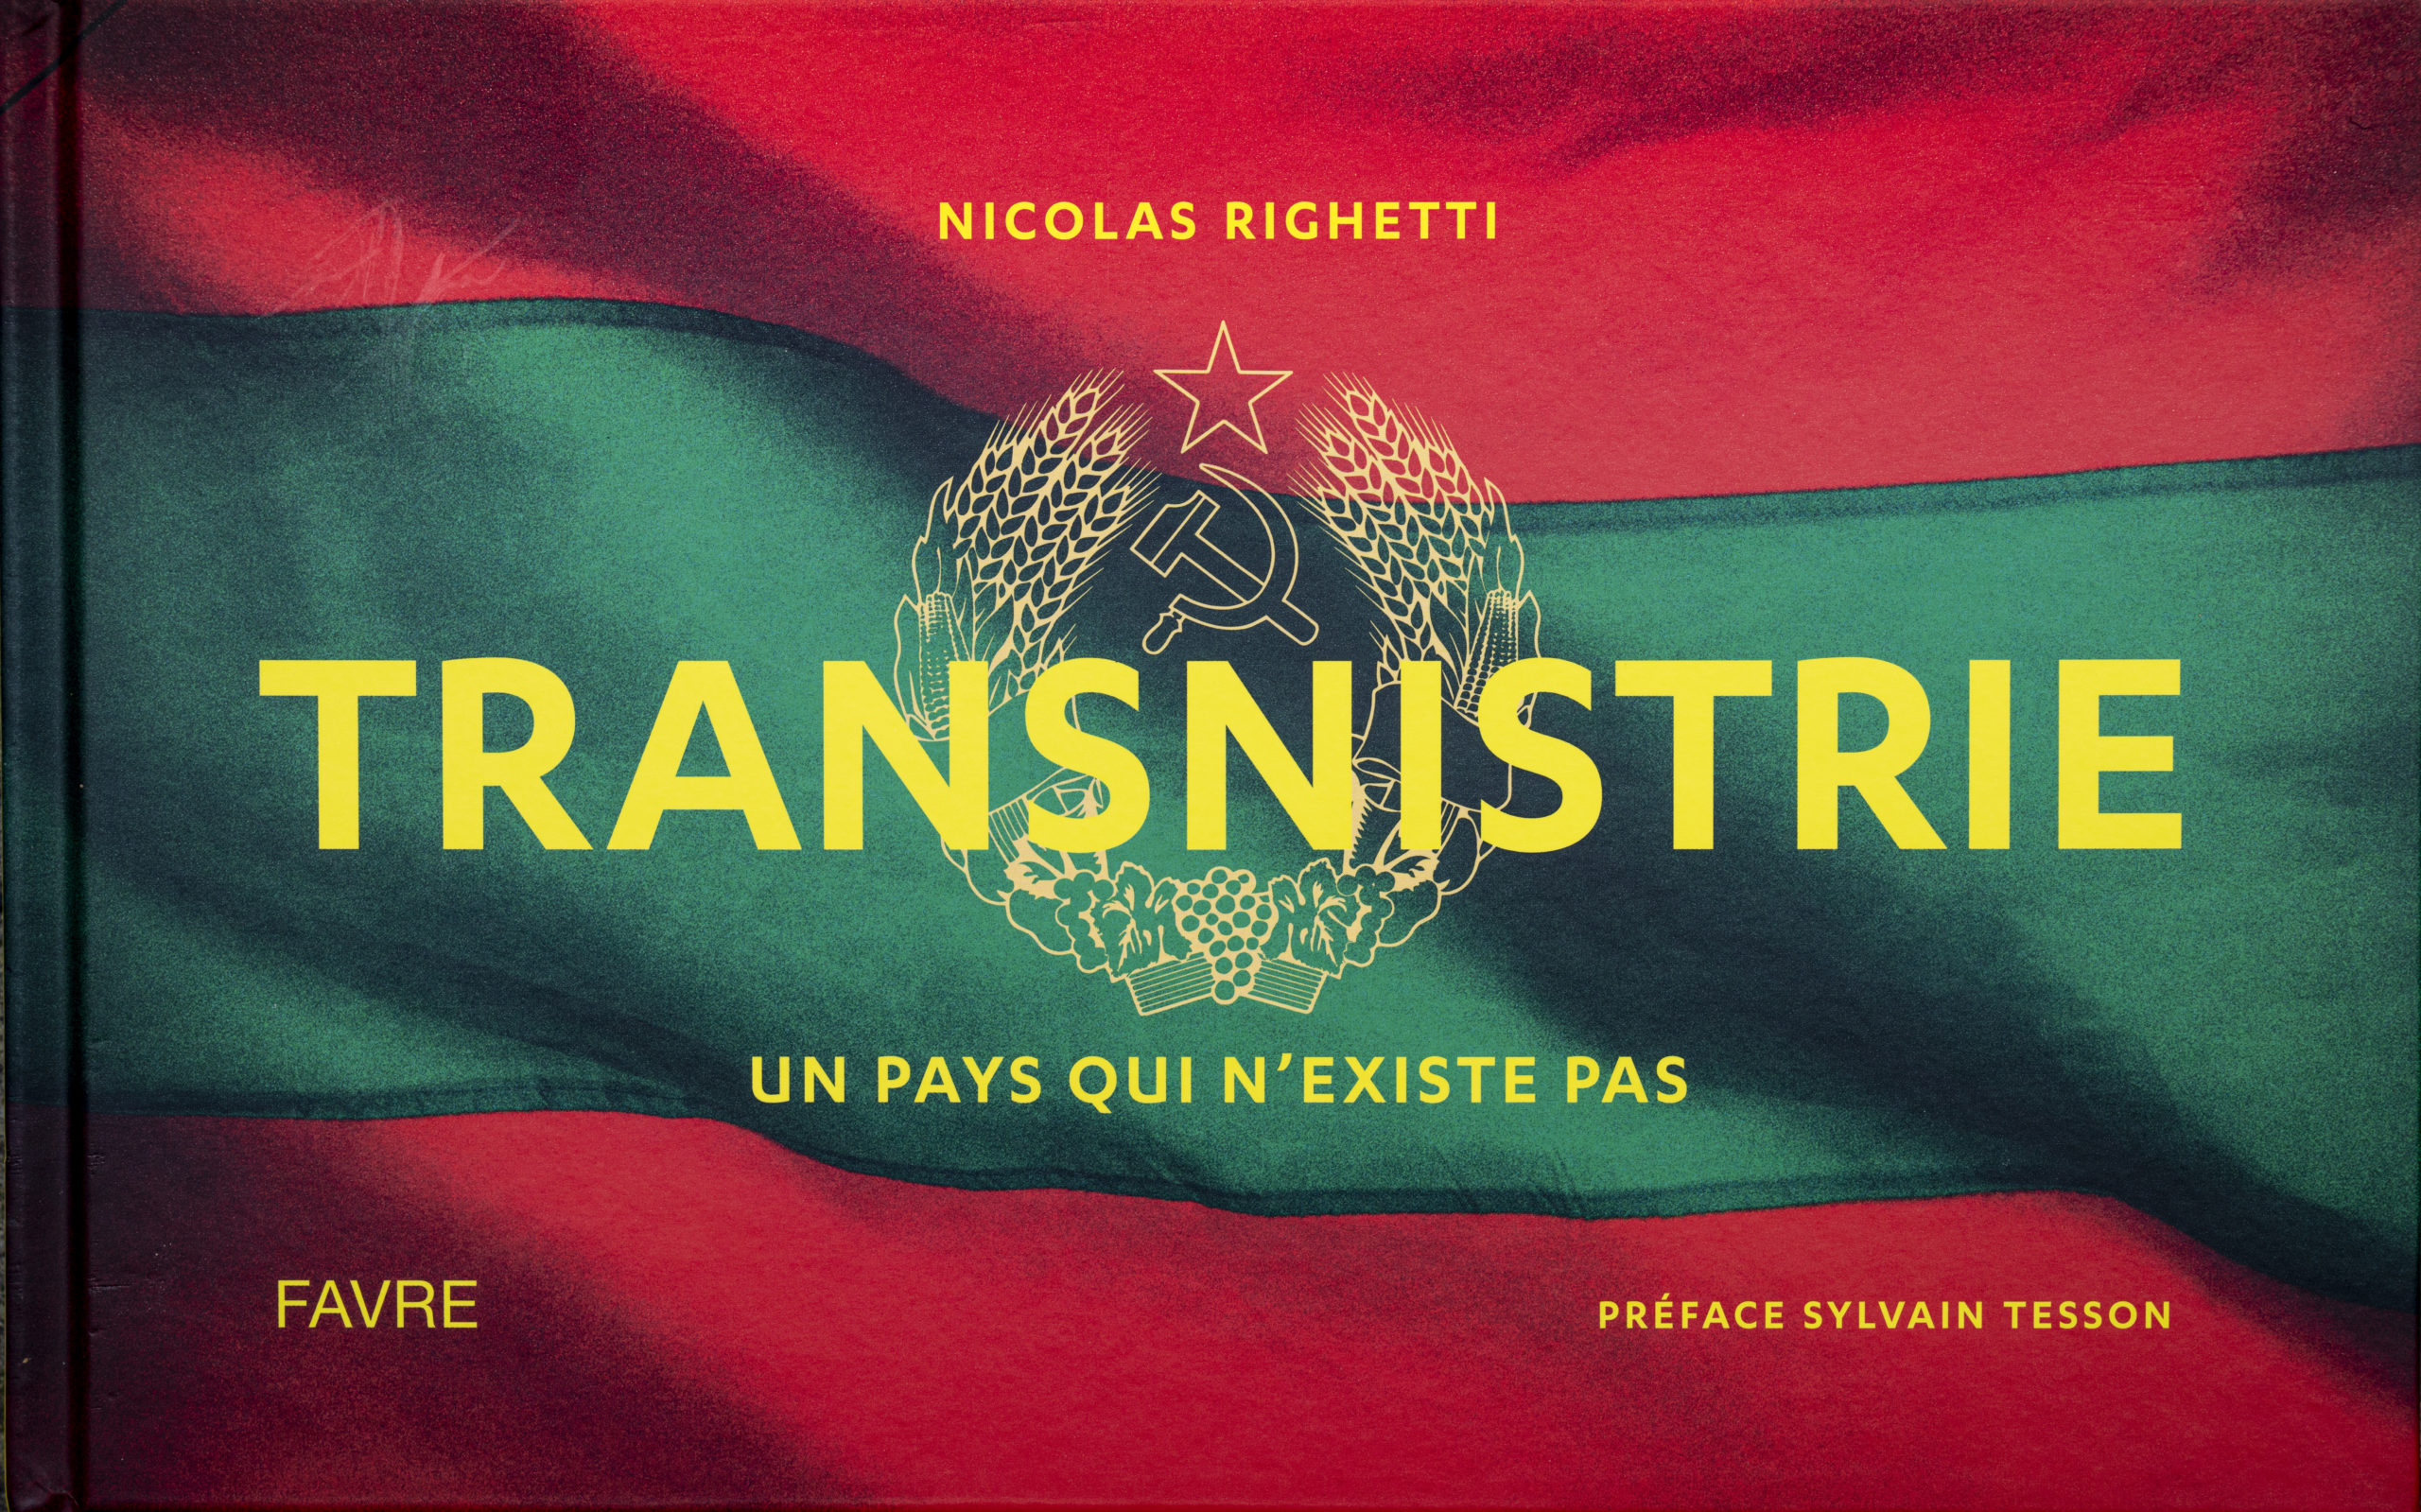 Transnistrie, un pays qui n'existe pas